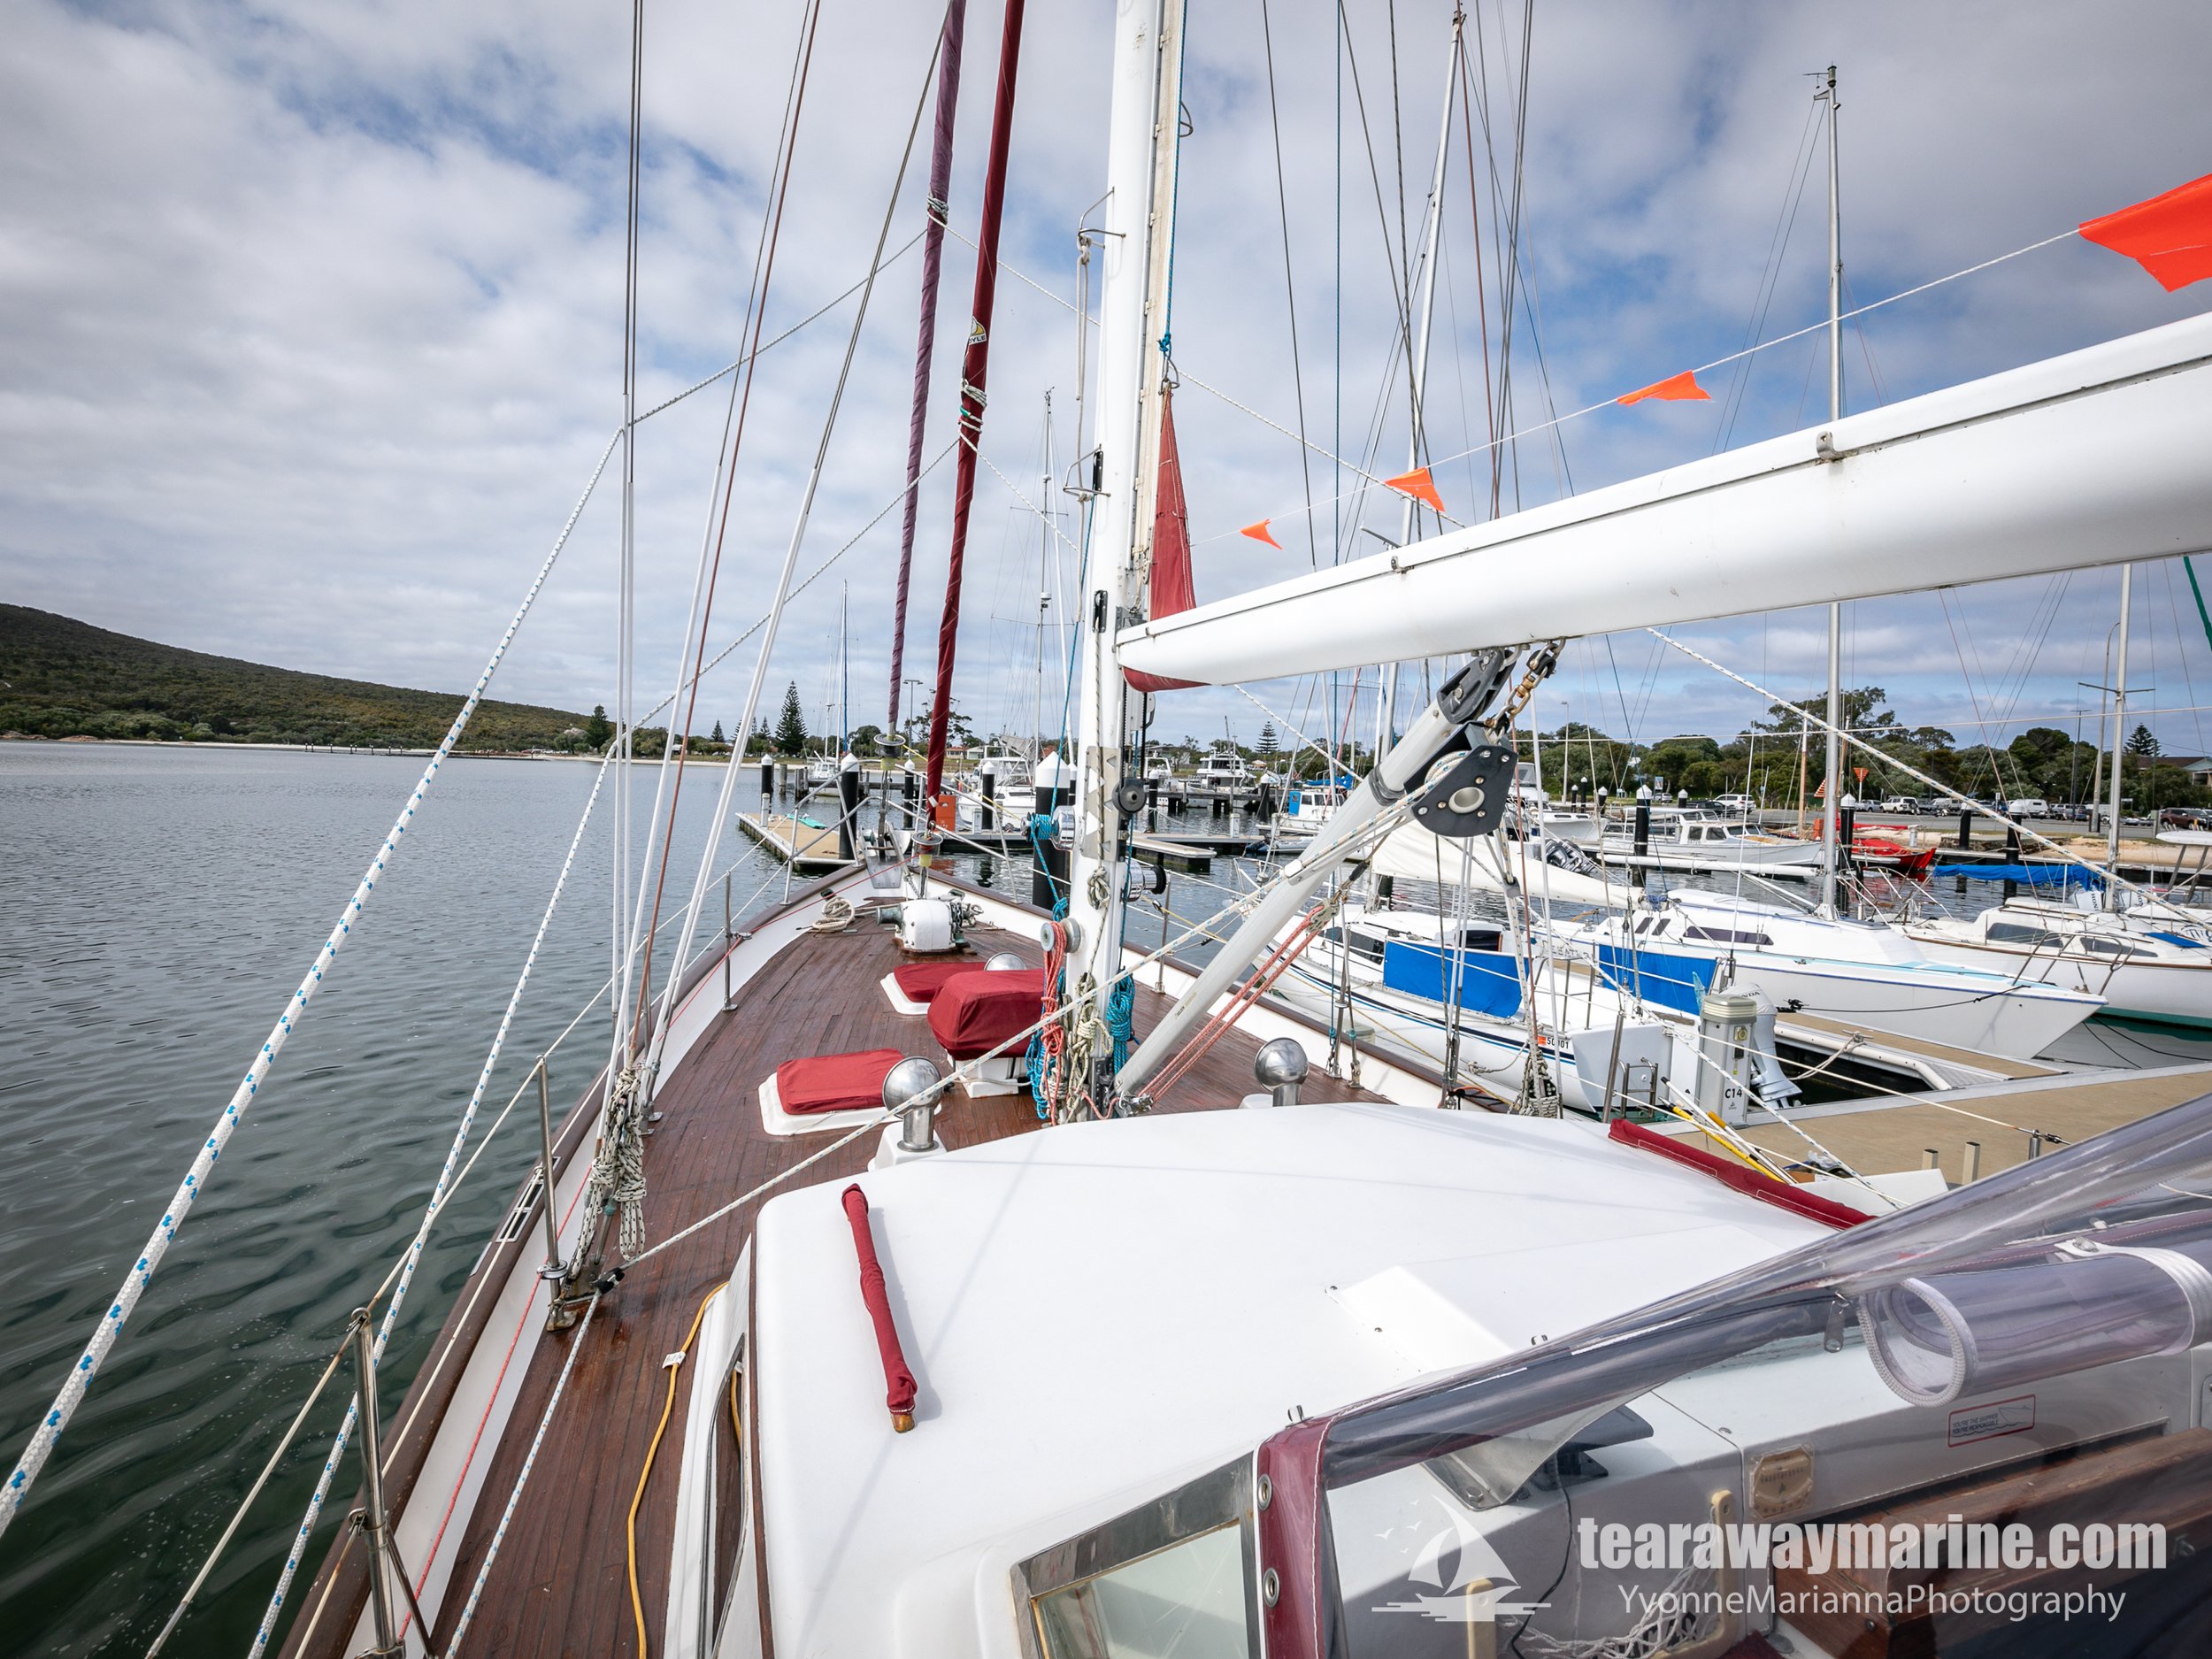 Calypso Yacht Tearaway Marine - Yvonne Marianna Photography-29.jpg